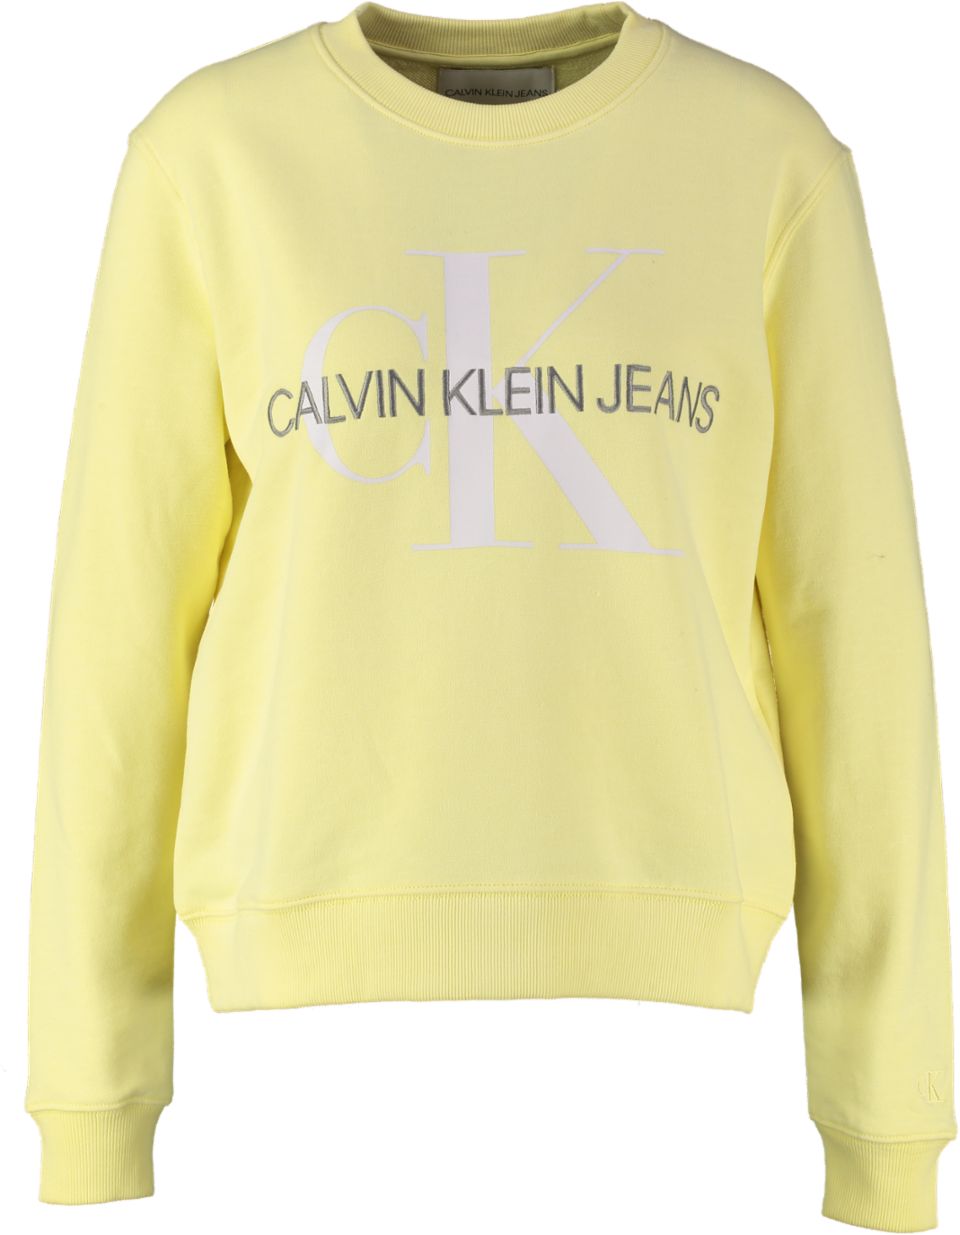 Brutaal ik ben verdwaald fles Dameskleding Truien & Vesten Calvin Klein Sweater VEGETABLE DYE - Bergmans  Fashion Outlet - Webshop | GRATIS VERZENDING!